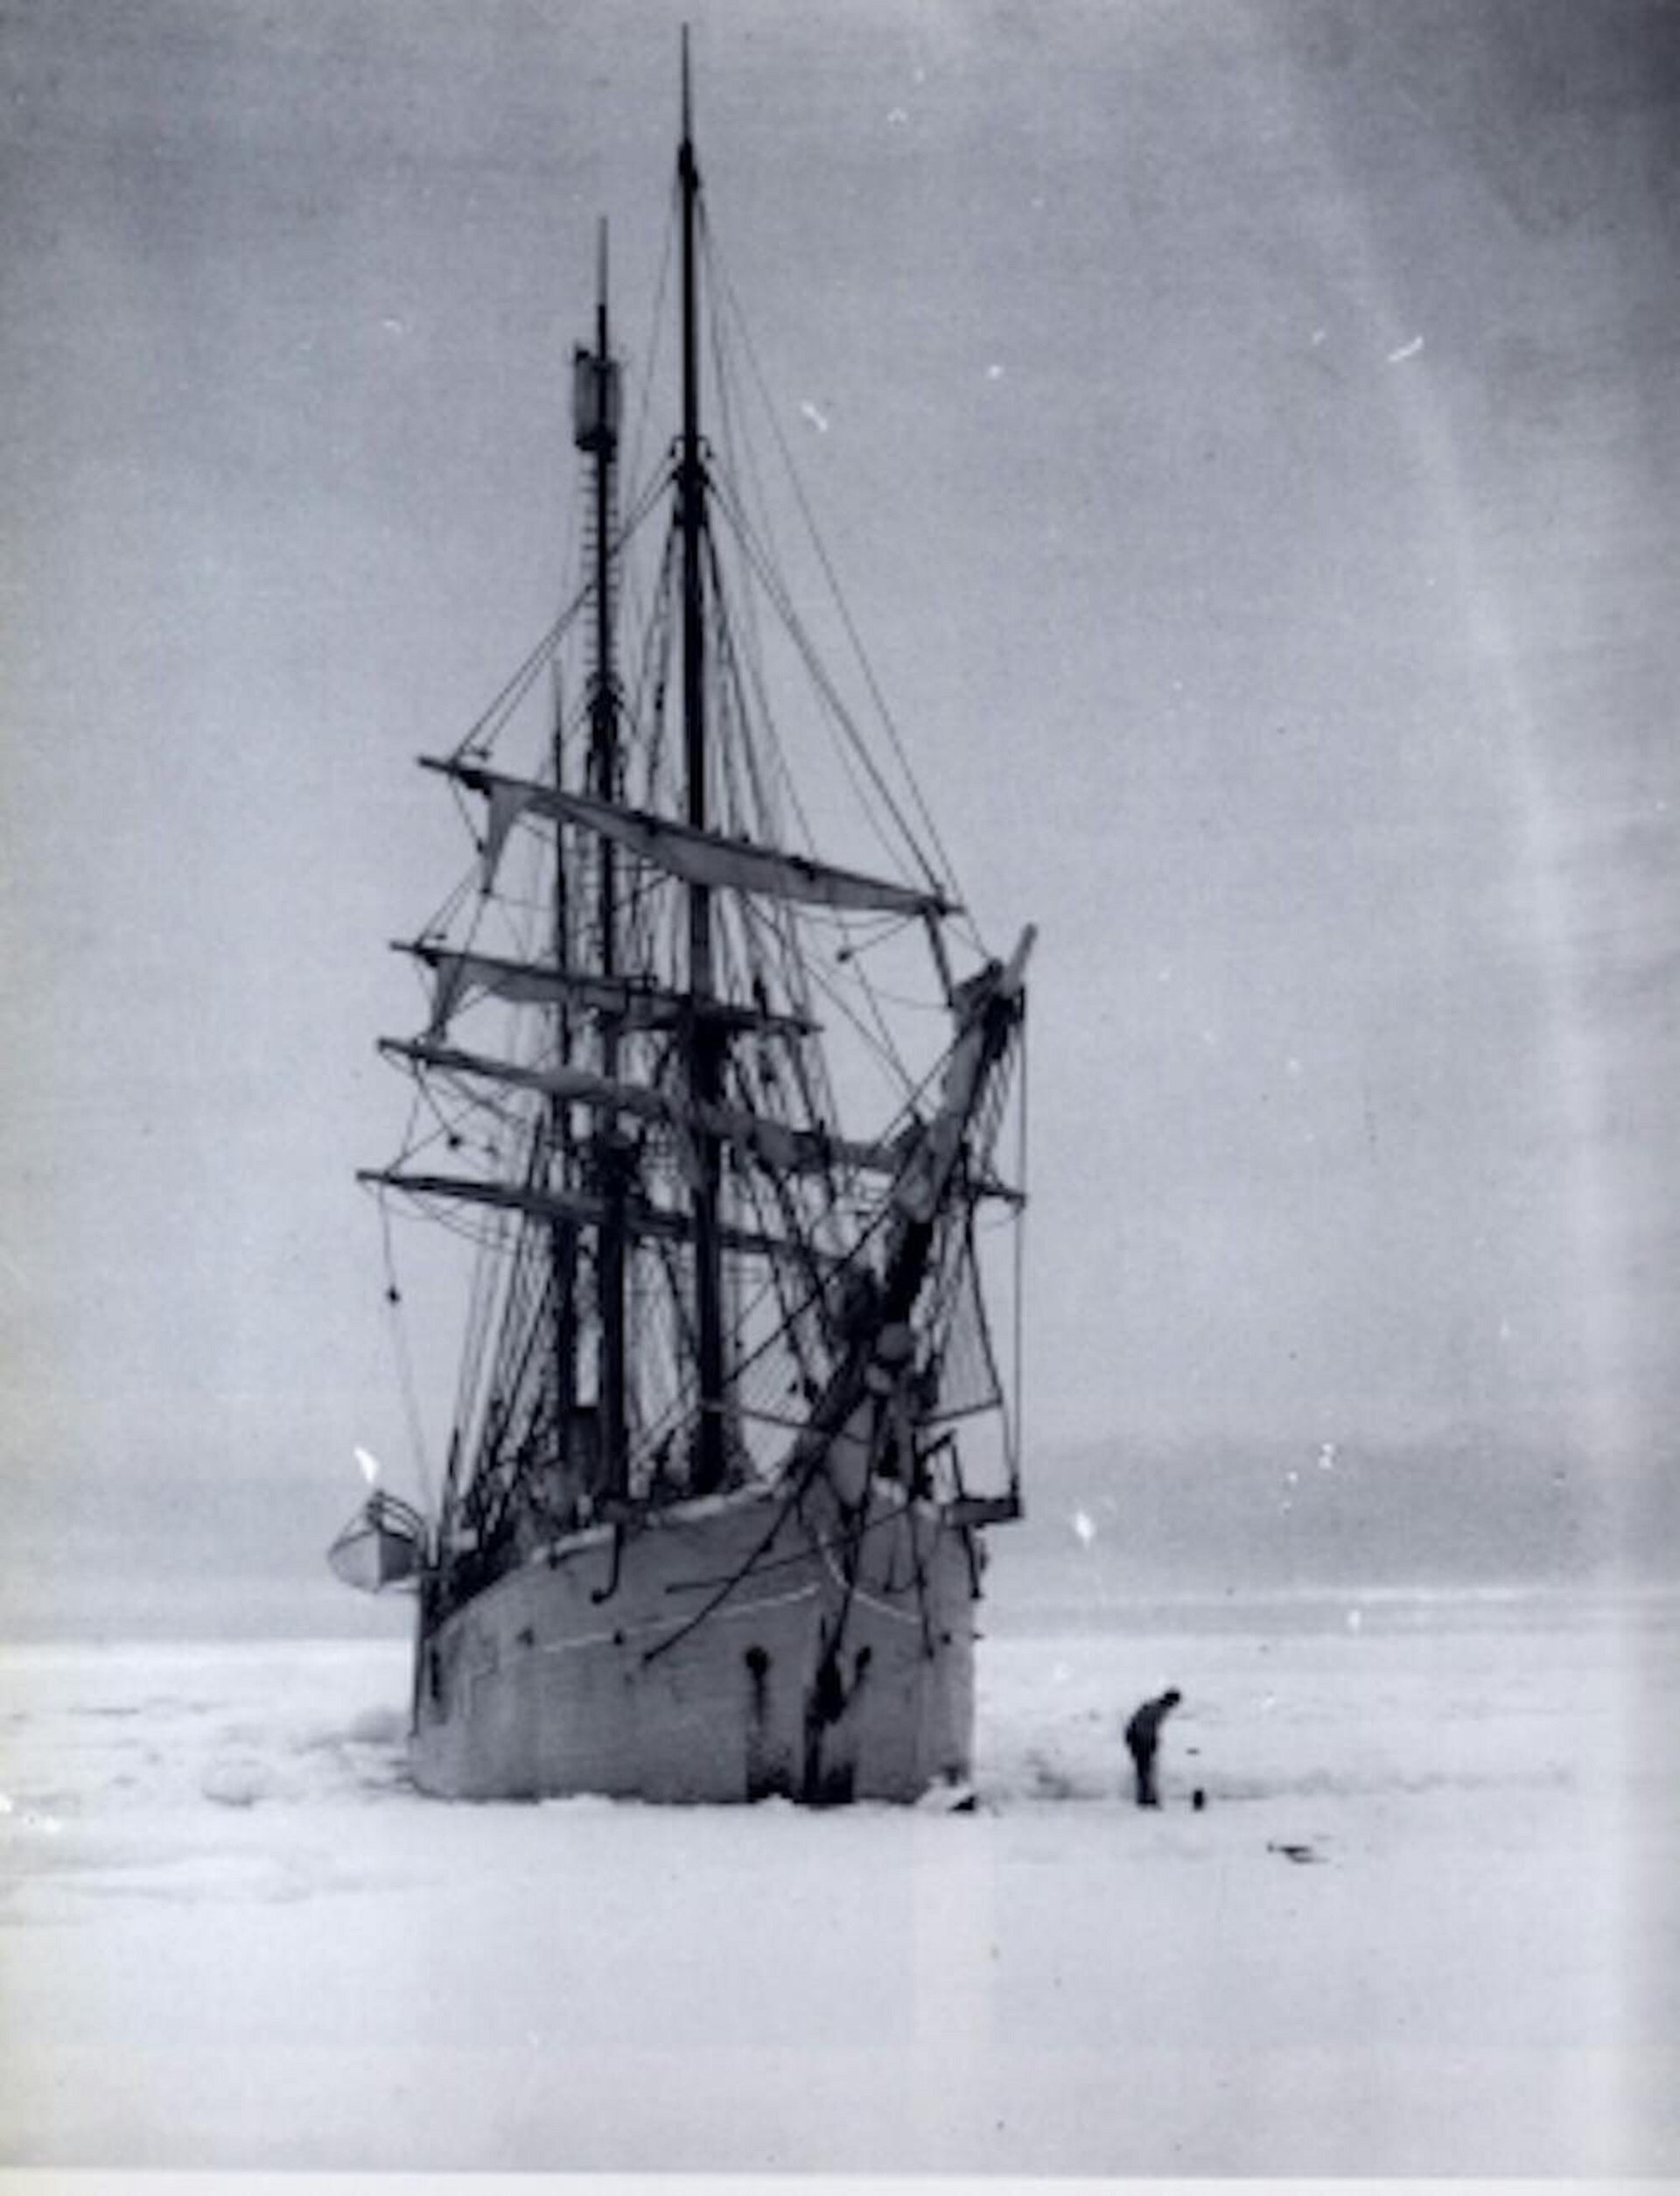 Một tàu thám hiểm từng kẹt trong băng trong hơn một năm.